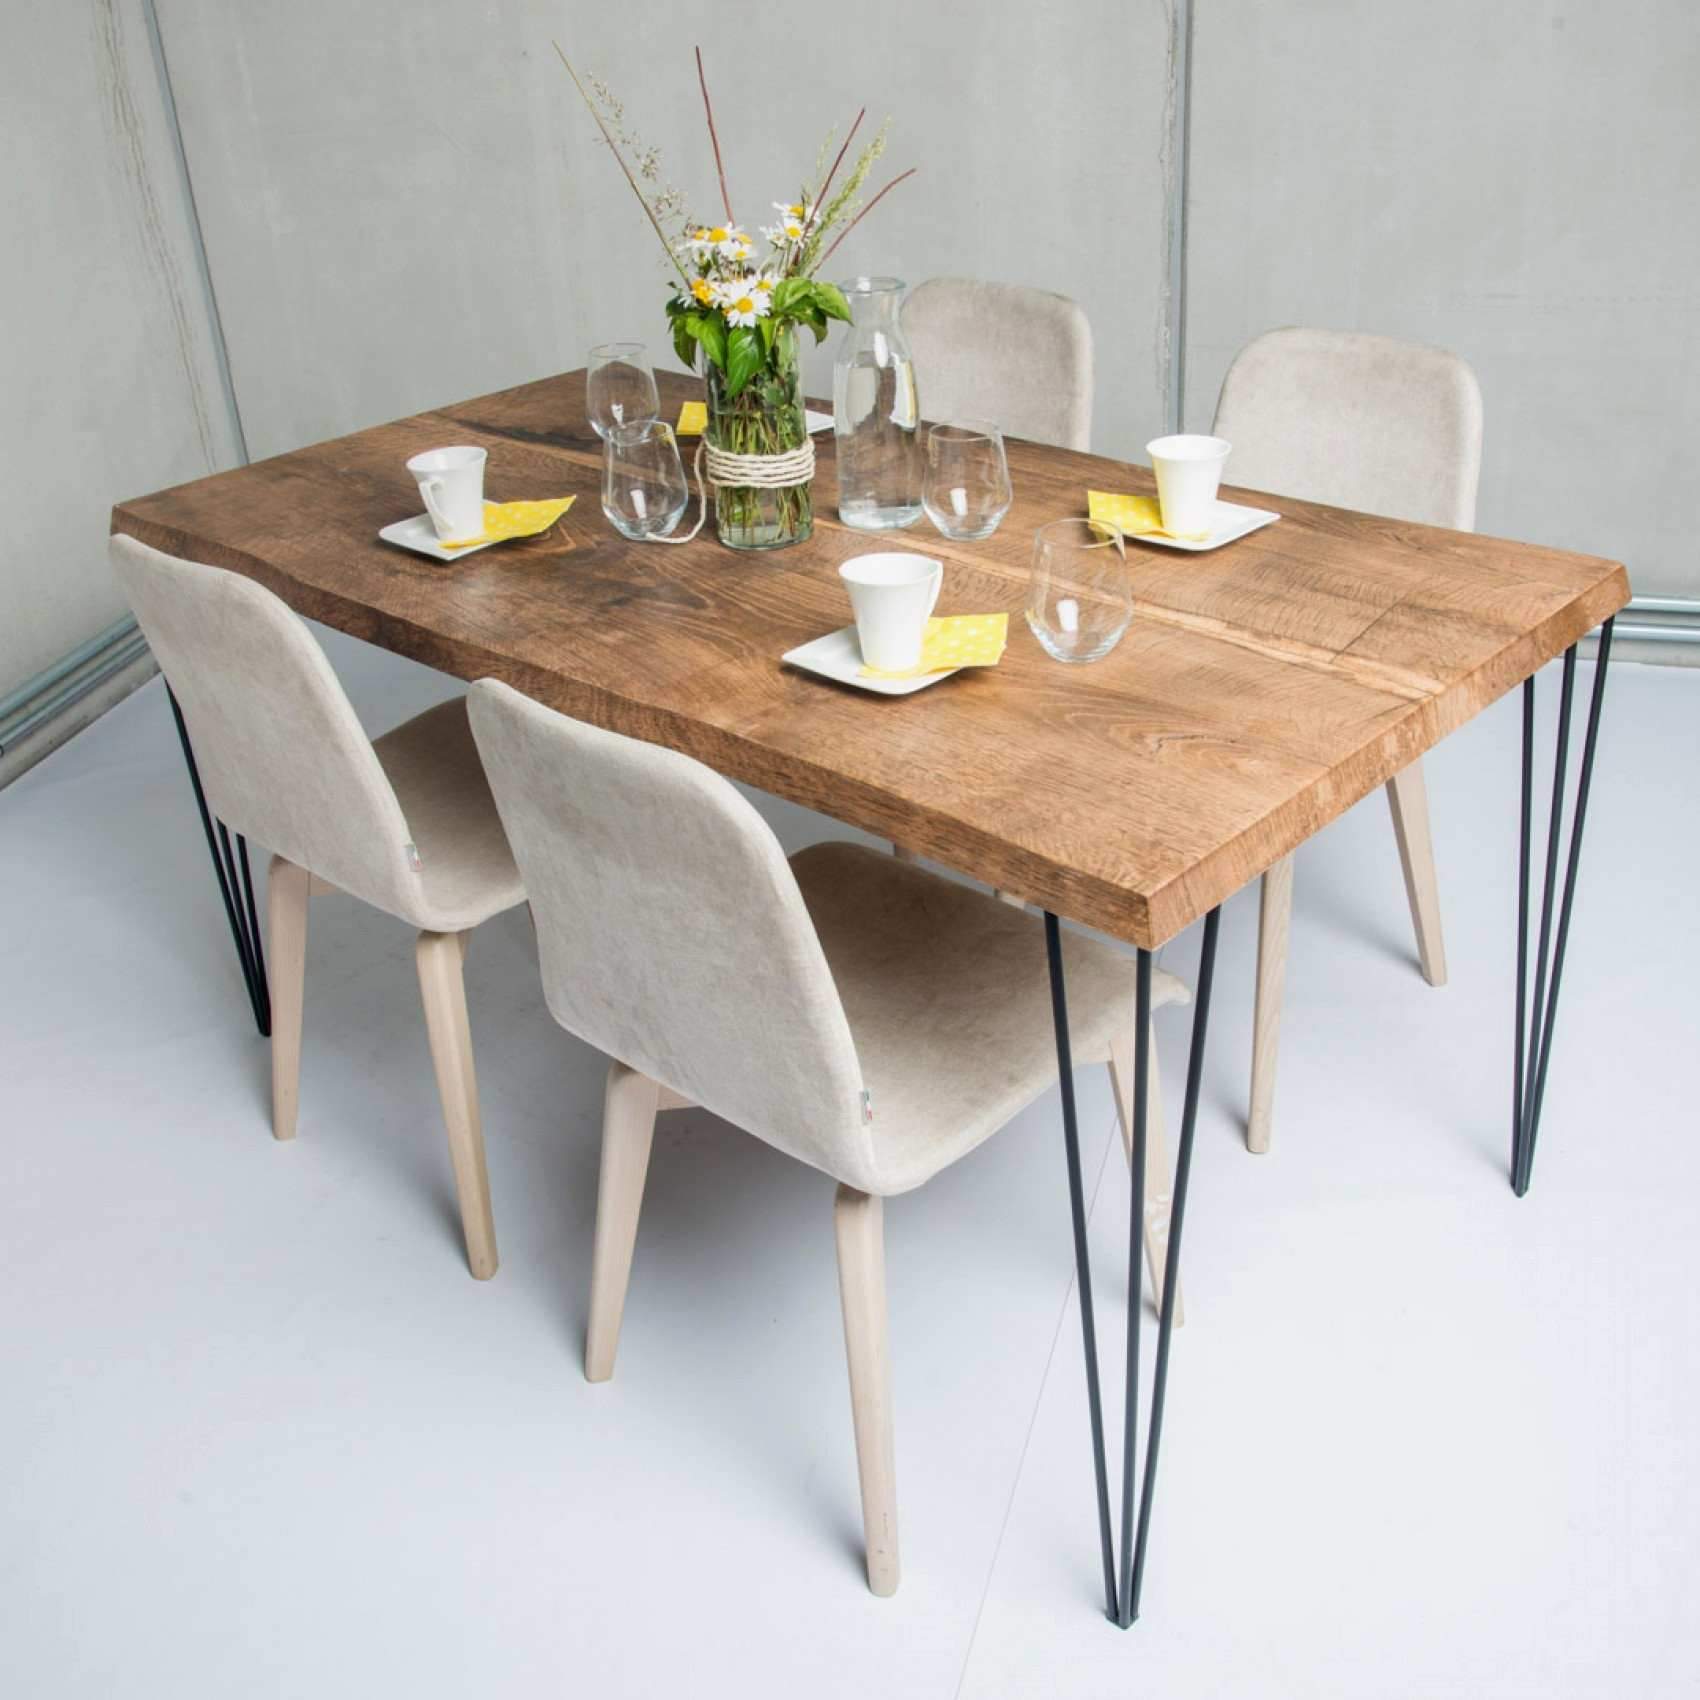 tisch und stuhle inspirierend esstisch mit sthlen beste von groa holzplatte stesstisch of tisch und stuhle